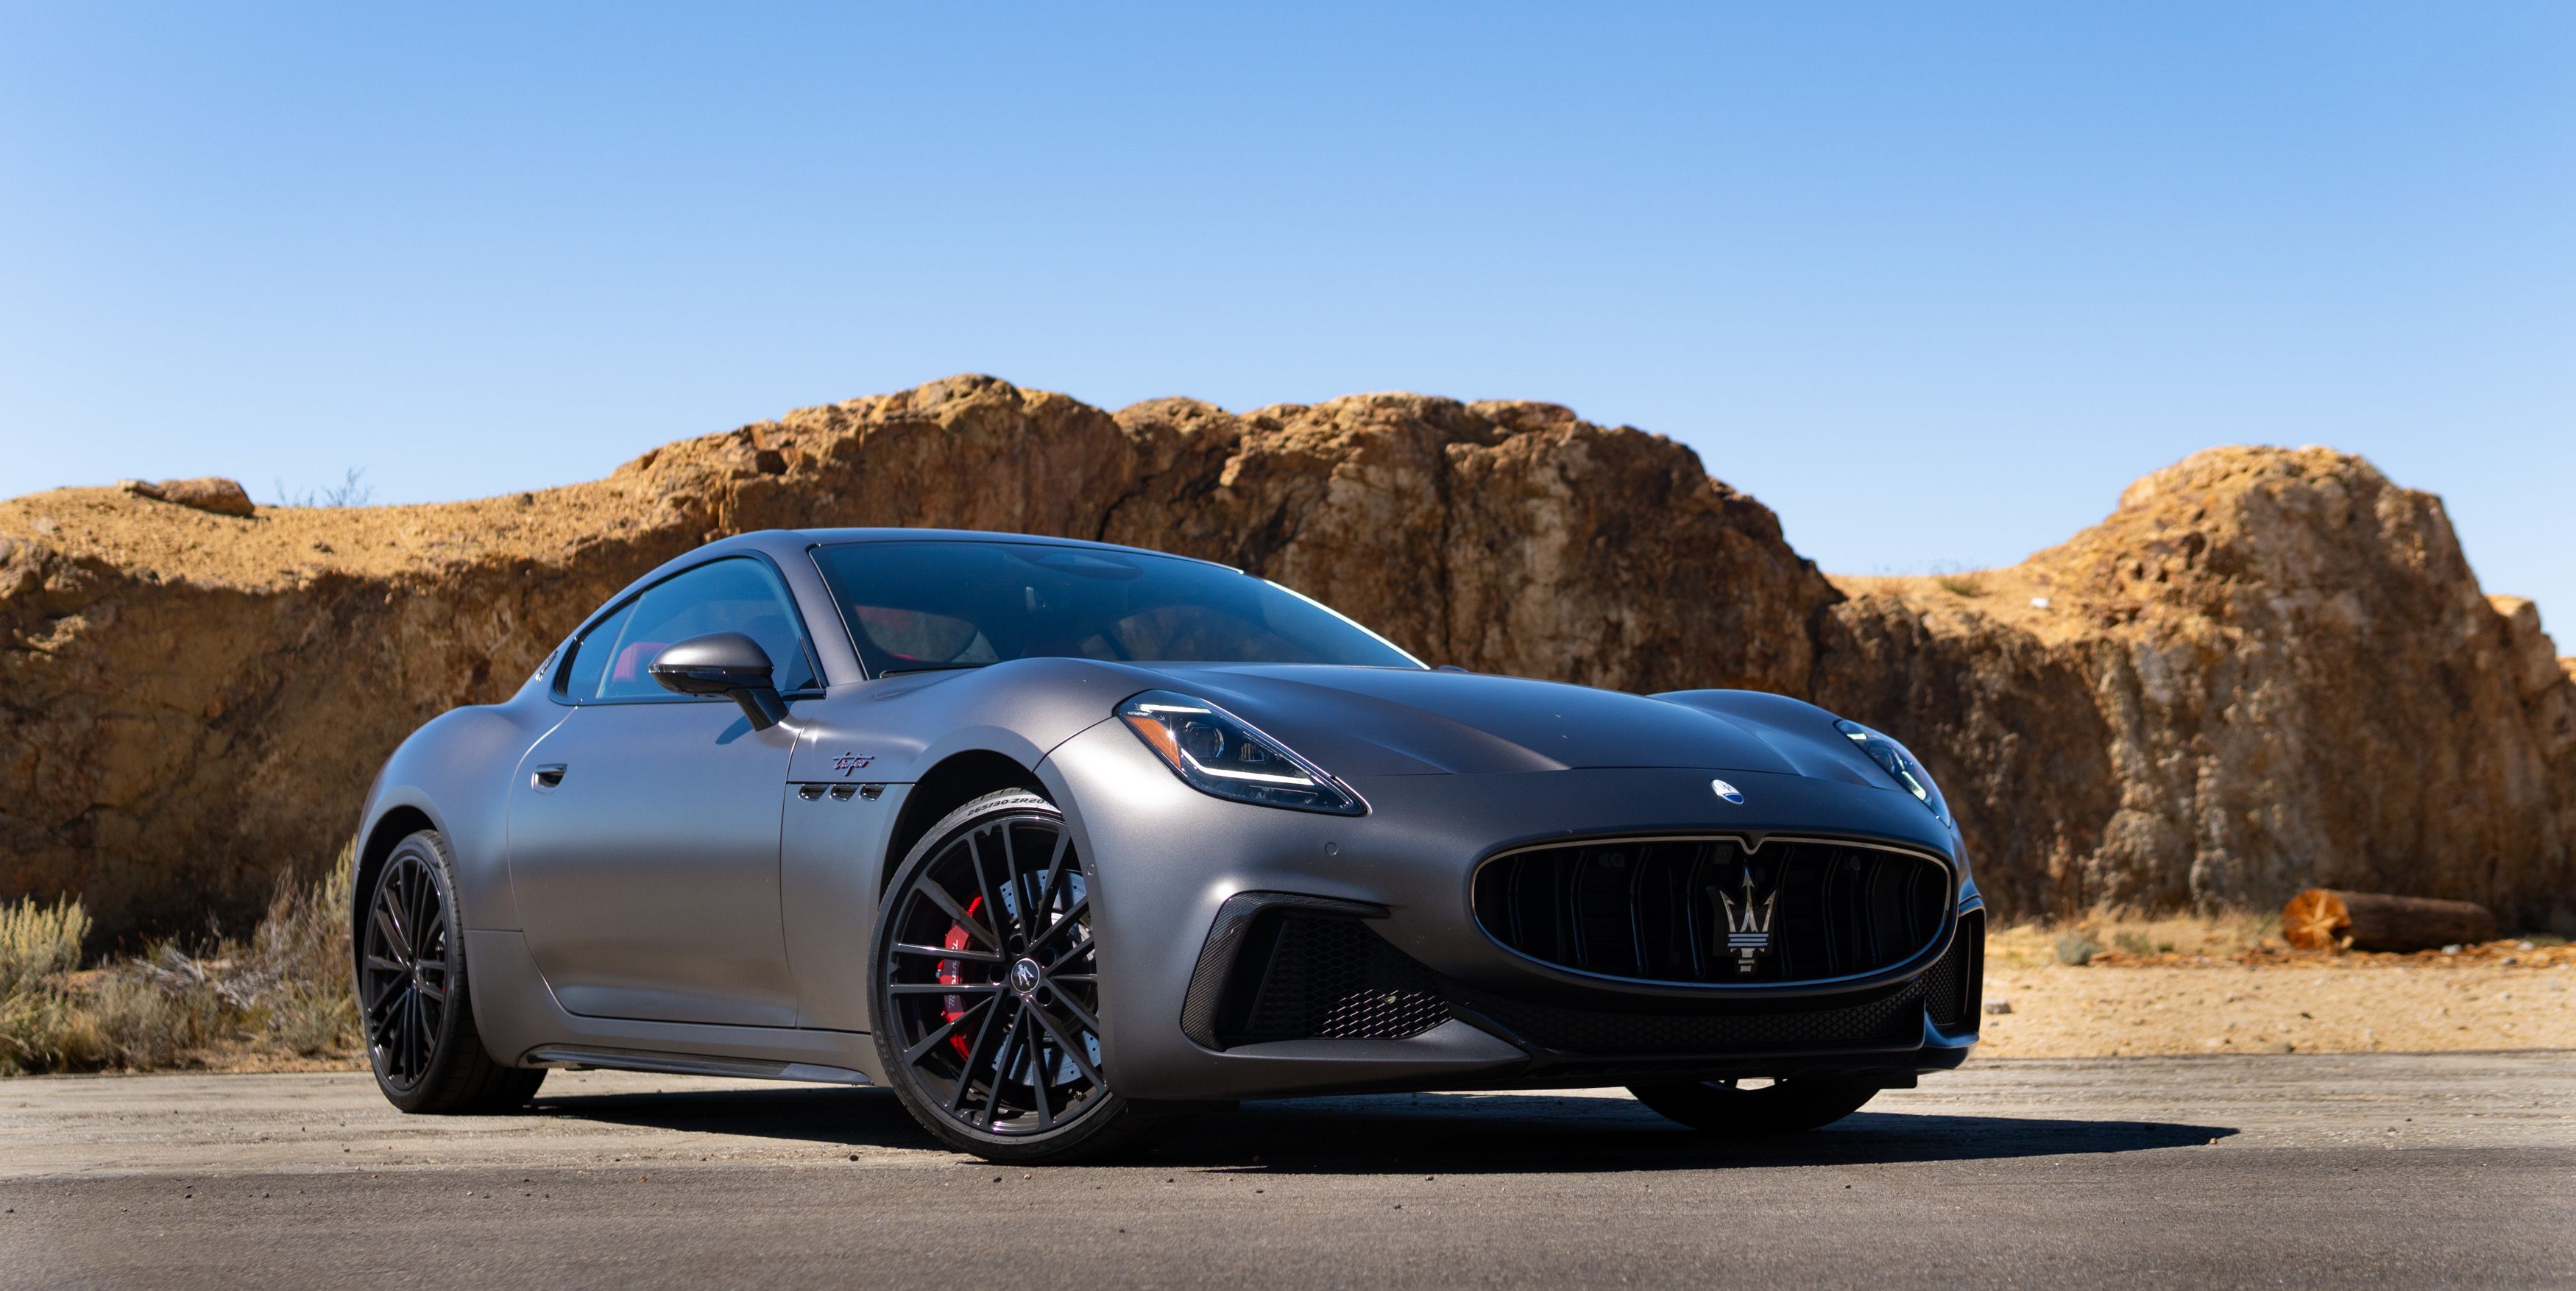 The New Maserati GranTurismo Is a Massive Improvement